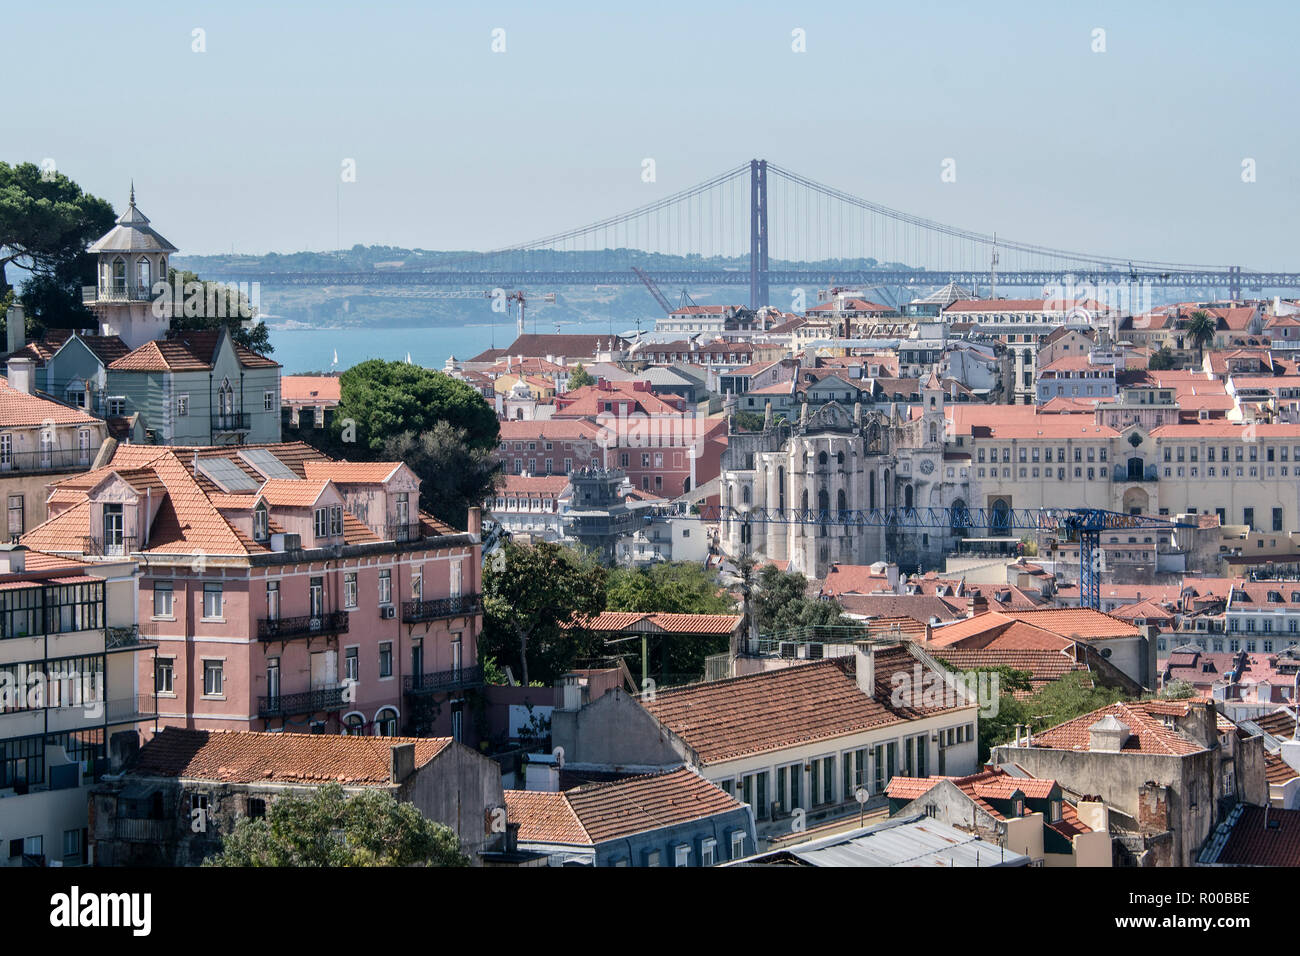 Vue sur le quartier de Baixa, le Tage et le pont suspendu de Avril 25 à partir de Miradouro Sophia de Mello Breyner Andresen, Lisbonne, Portugal Banque D'Images